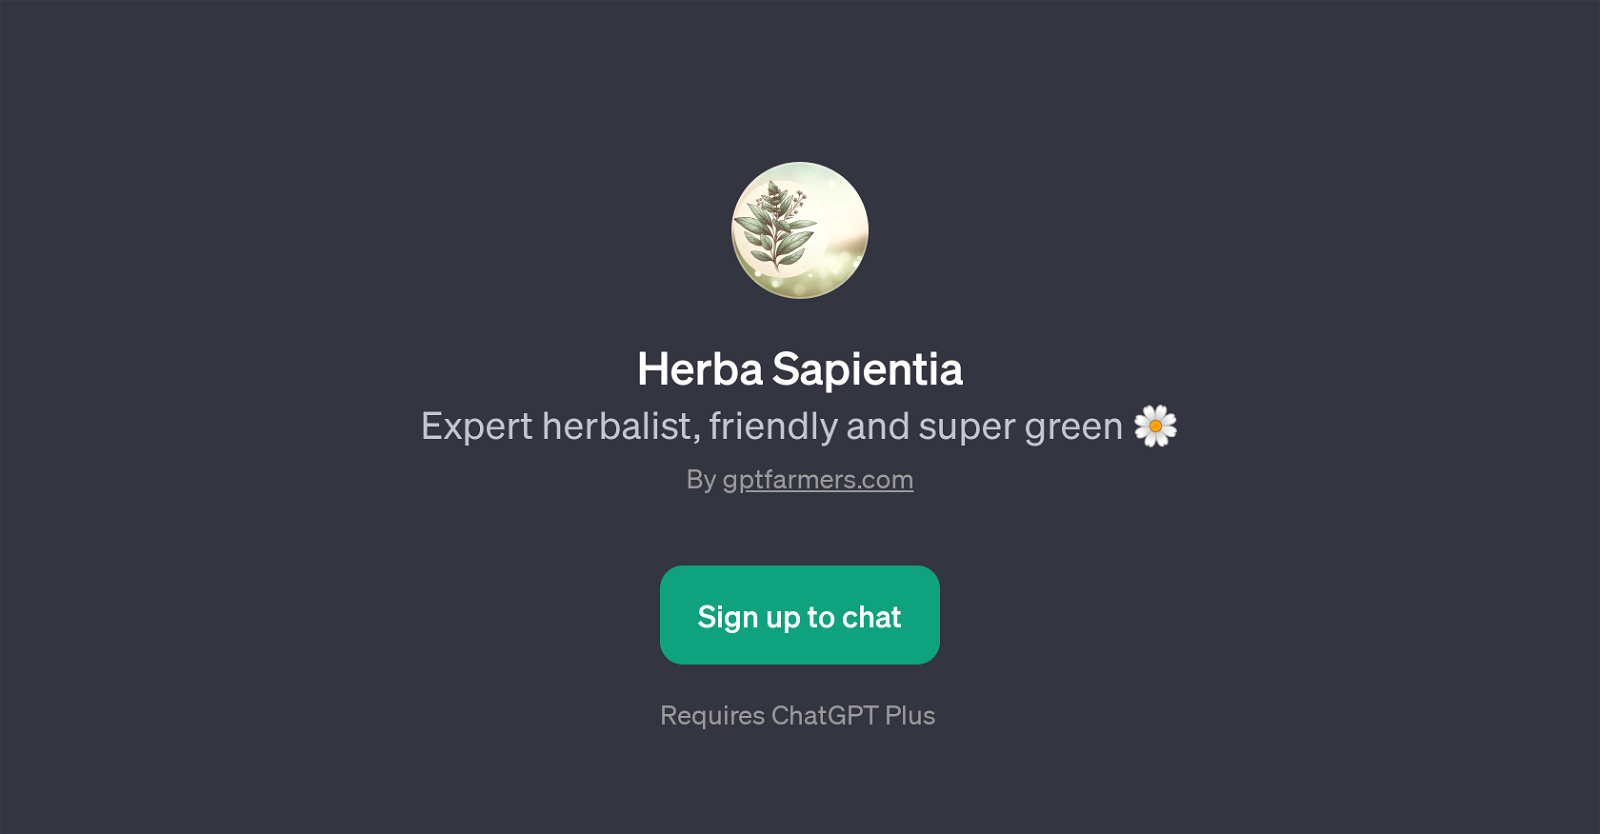 Herba Sapientia website